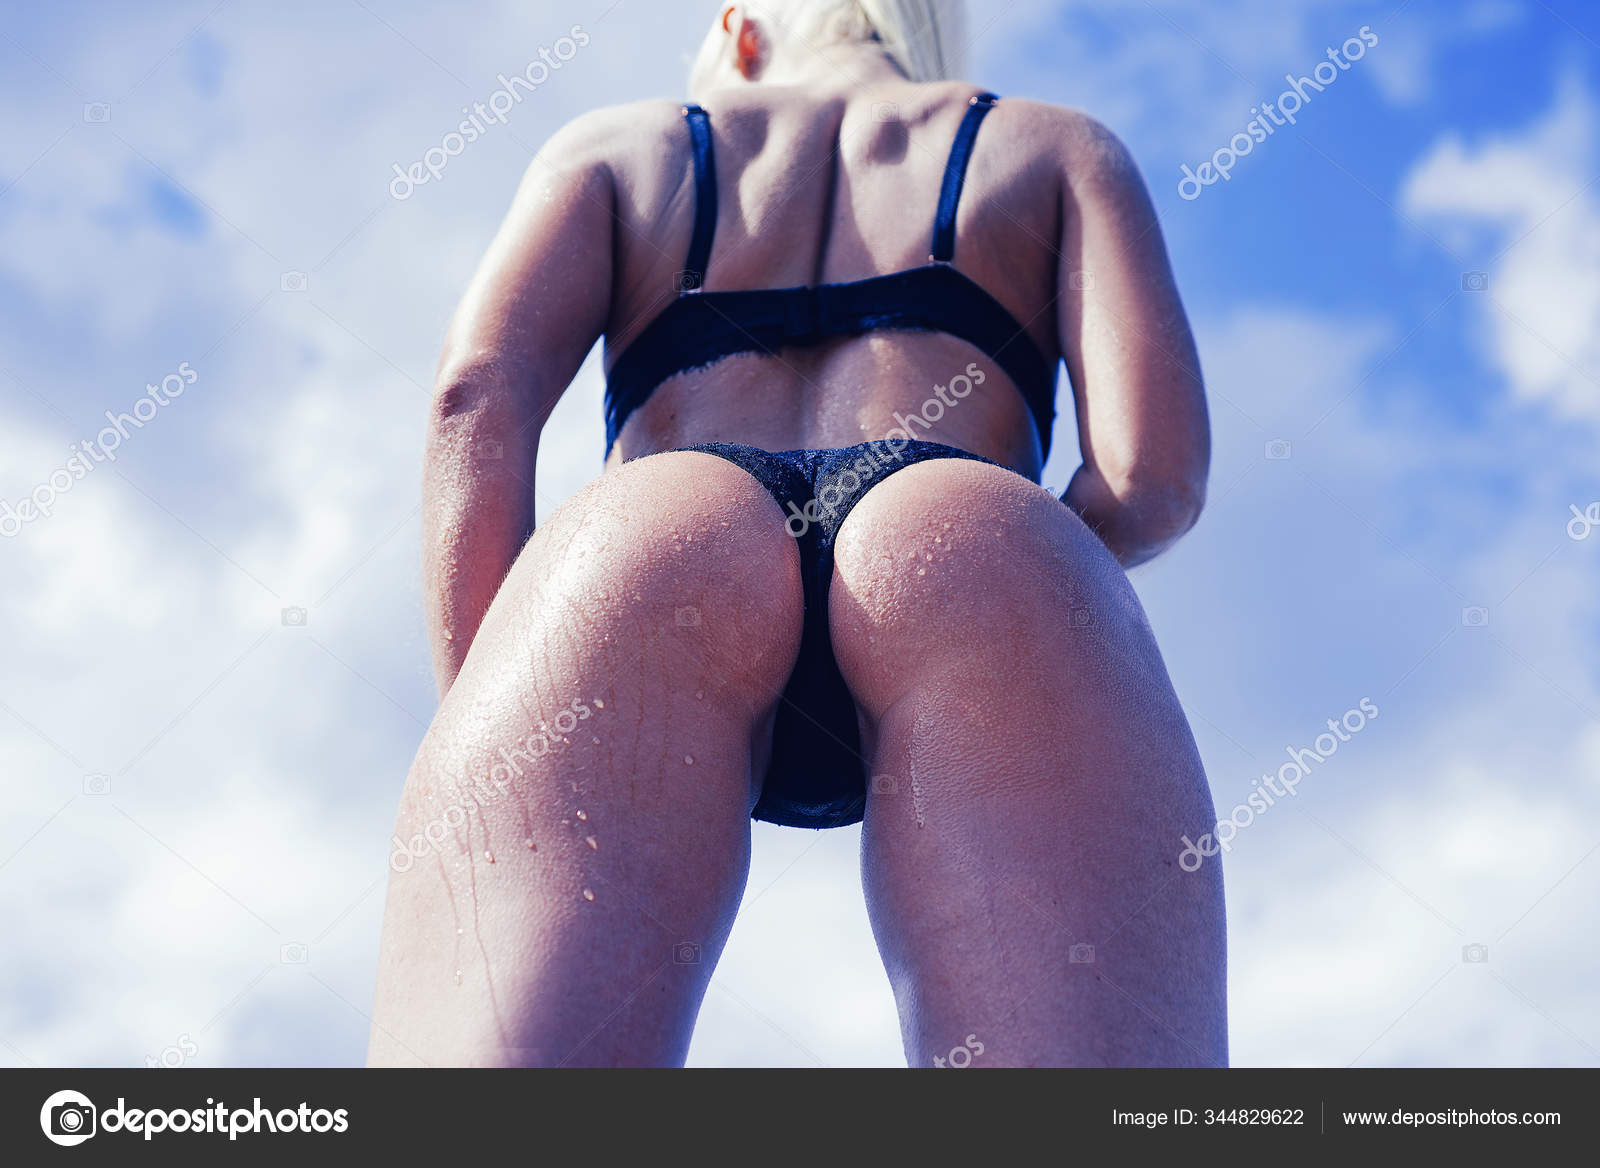 wife posing in bikini